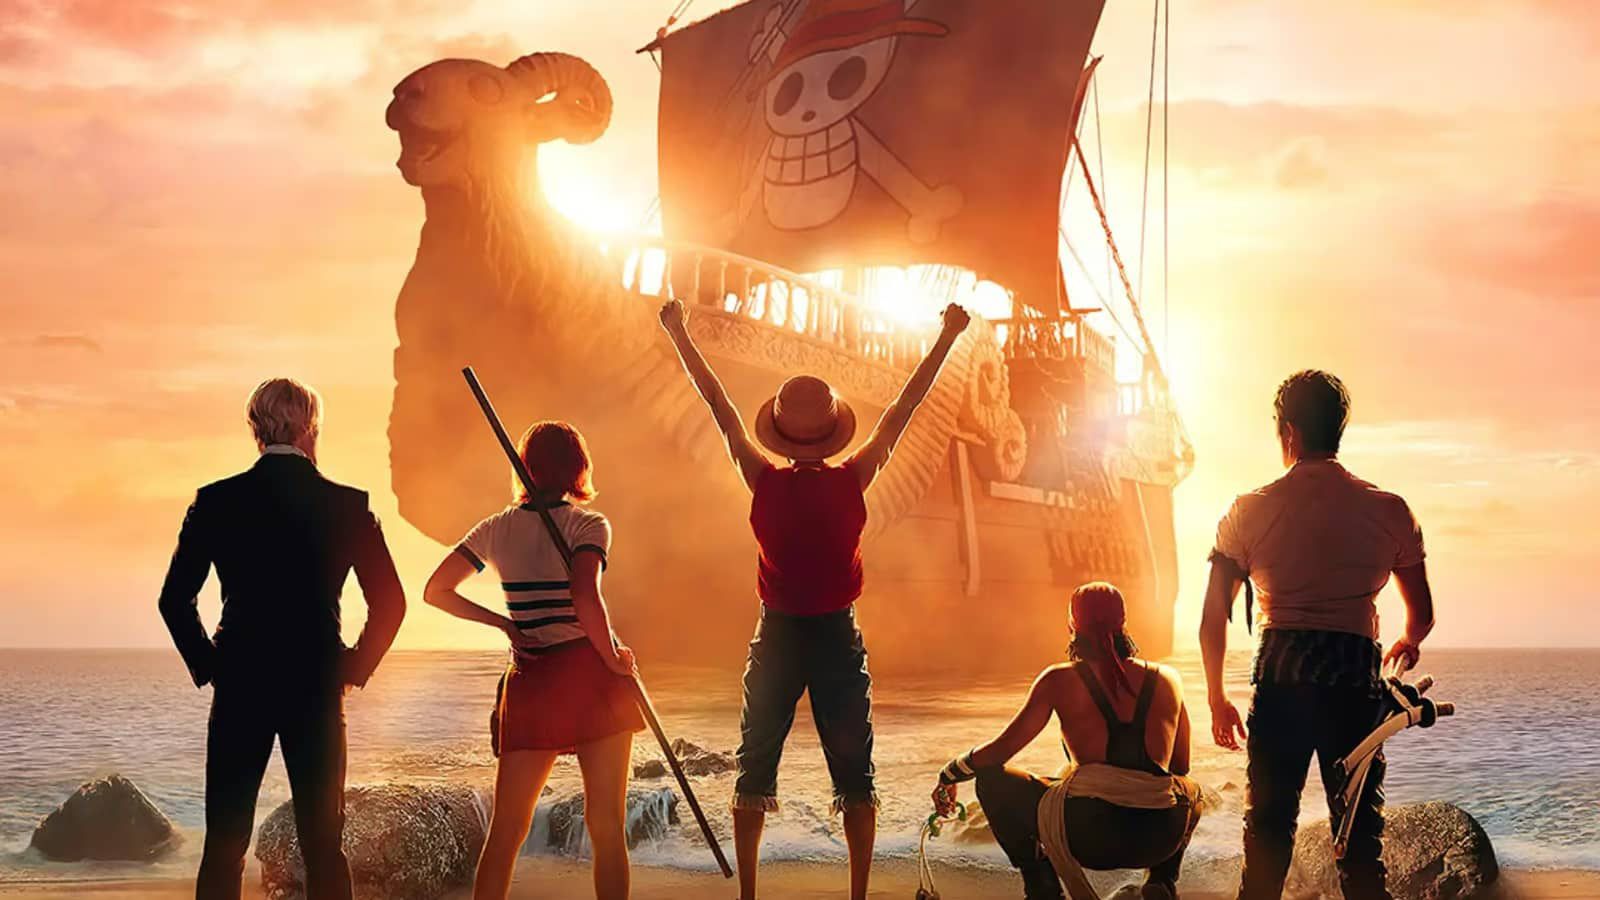 Saint Seiya Galaxy - 𝗢𝗙𝗙 ❗ 𝗟𝗜𝗩𝗘-𝗔𝗖𝗧𝗜𝗢𝗡 𝗢𝗡𝗘 𝗣𝗜𝗘𝗖𝗘  ☠️🏴‍☠️ Netflix levará Going Merry, navio de One Piece, à Praia de  Copacabana 😱 Celebrando estreia da série live-action, navio ficará aberto  para